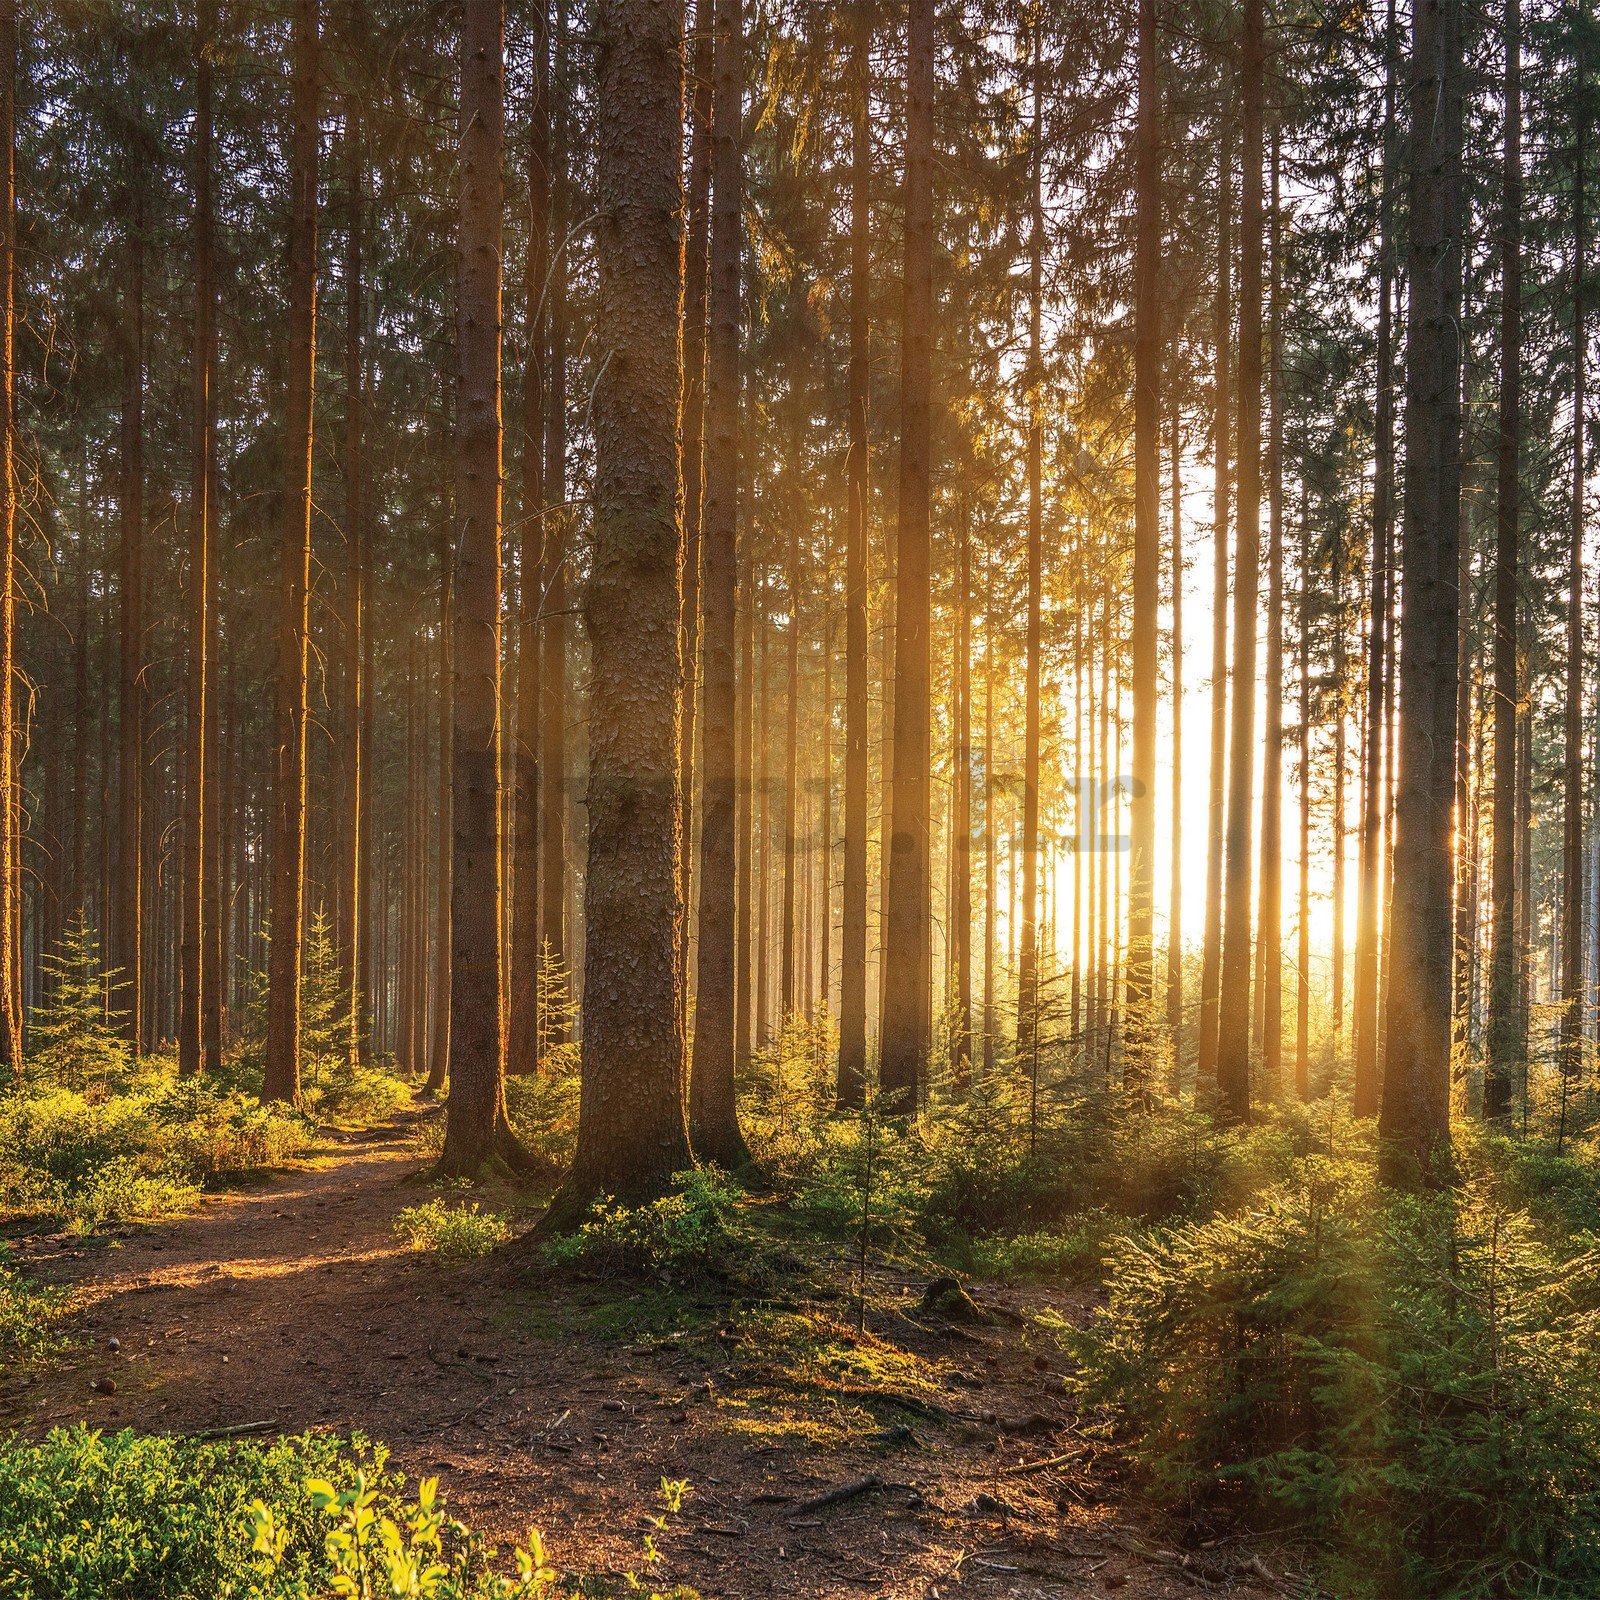 Vlies foto tapeta: Zalazak sunca u šumi (2) - 416x254 cm